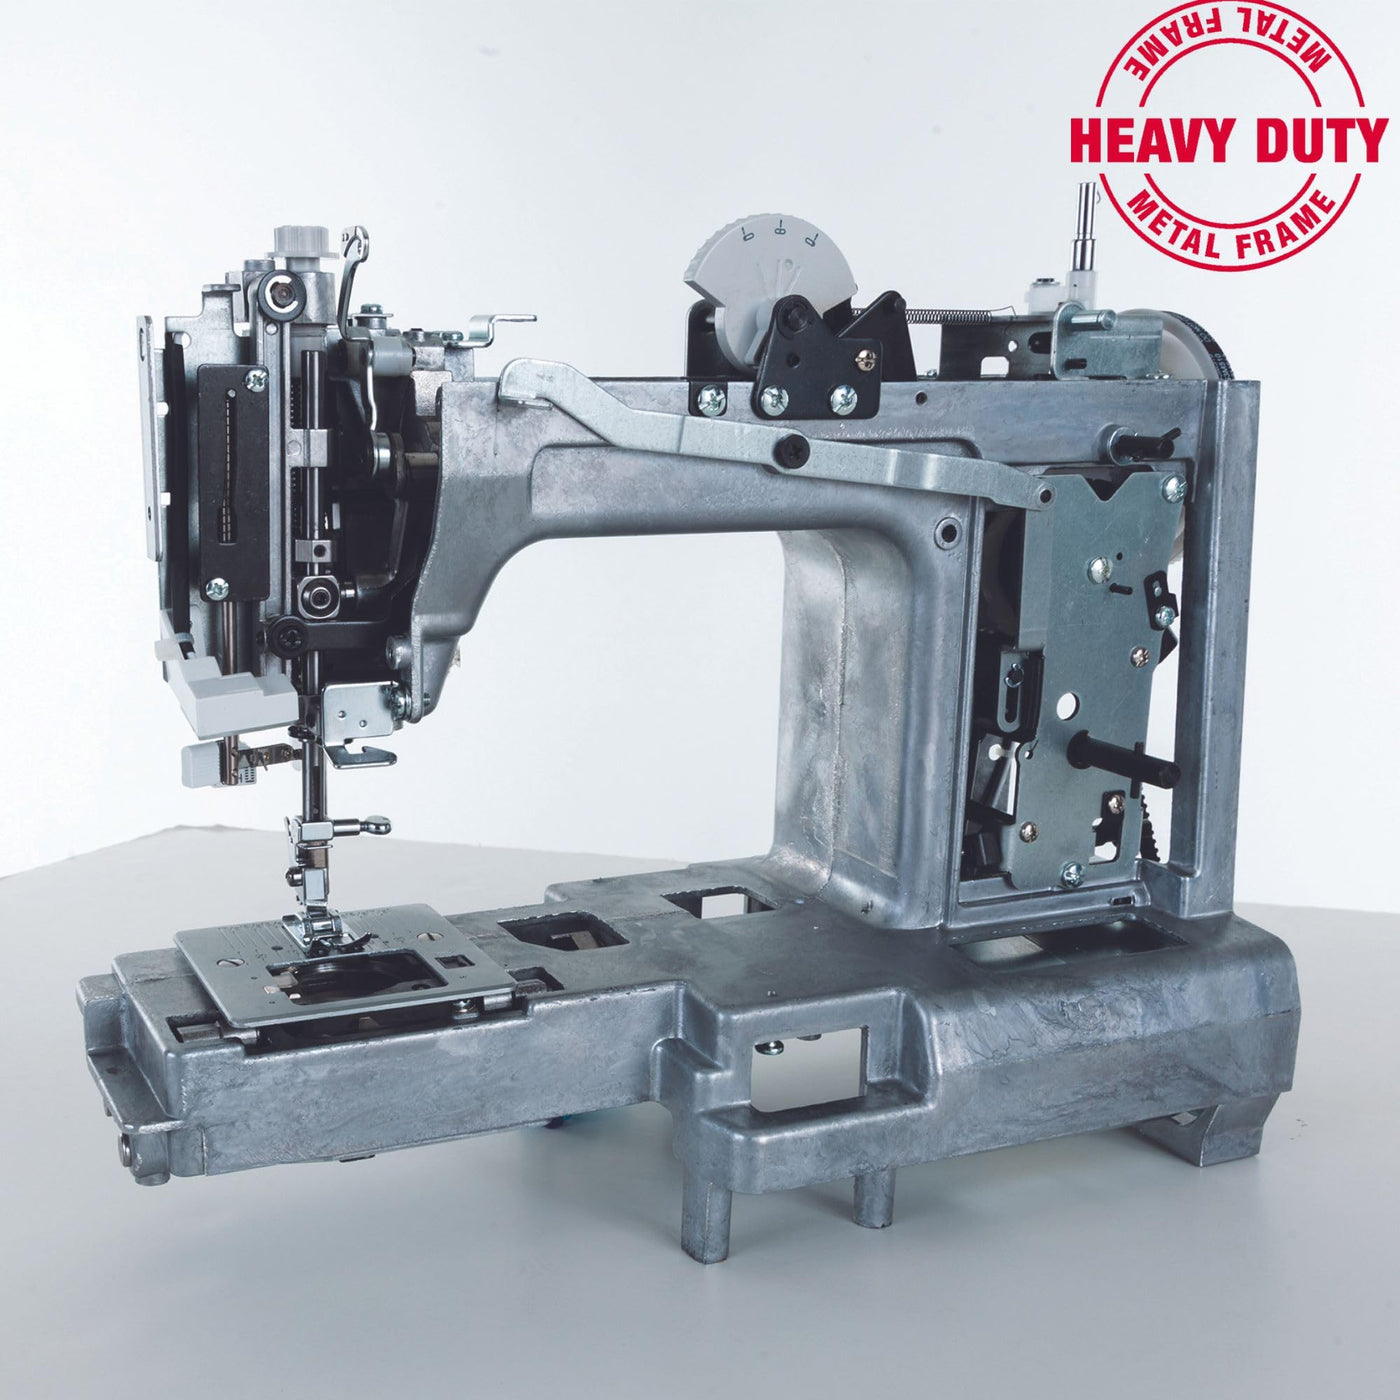 Singer 4423 Heavy Duty Sewing Machine,Grey